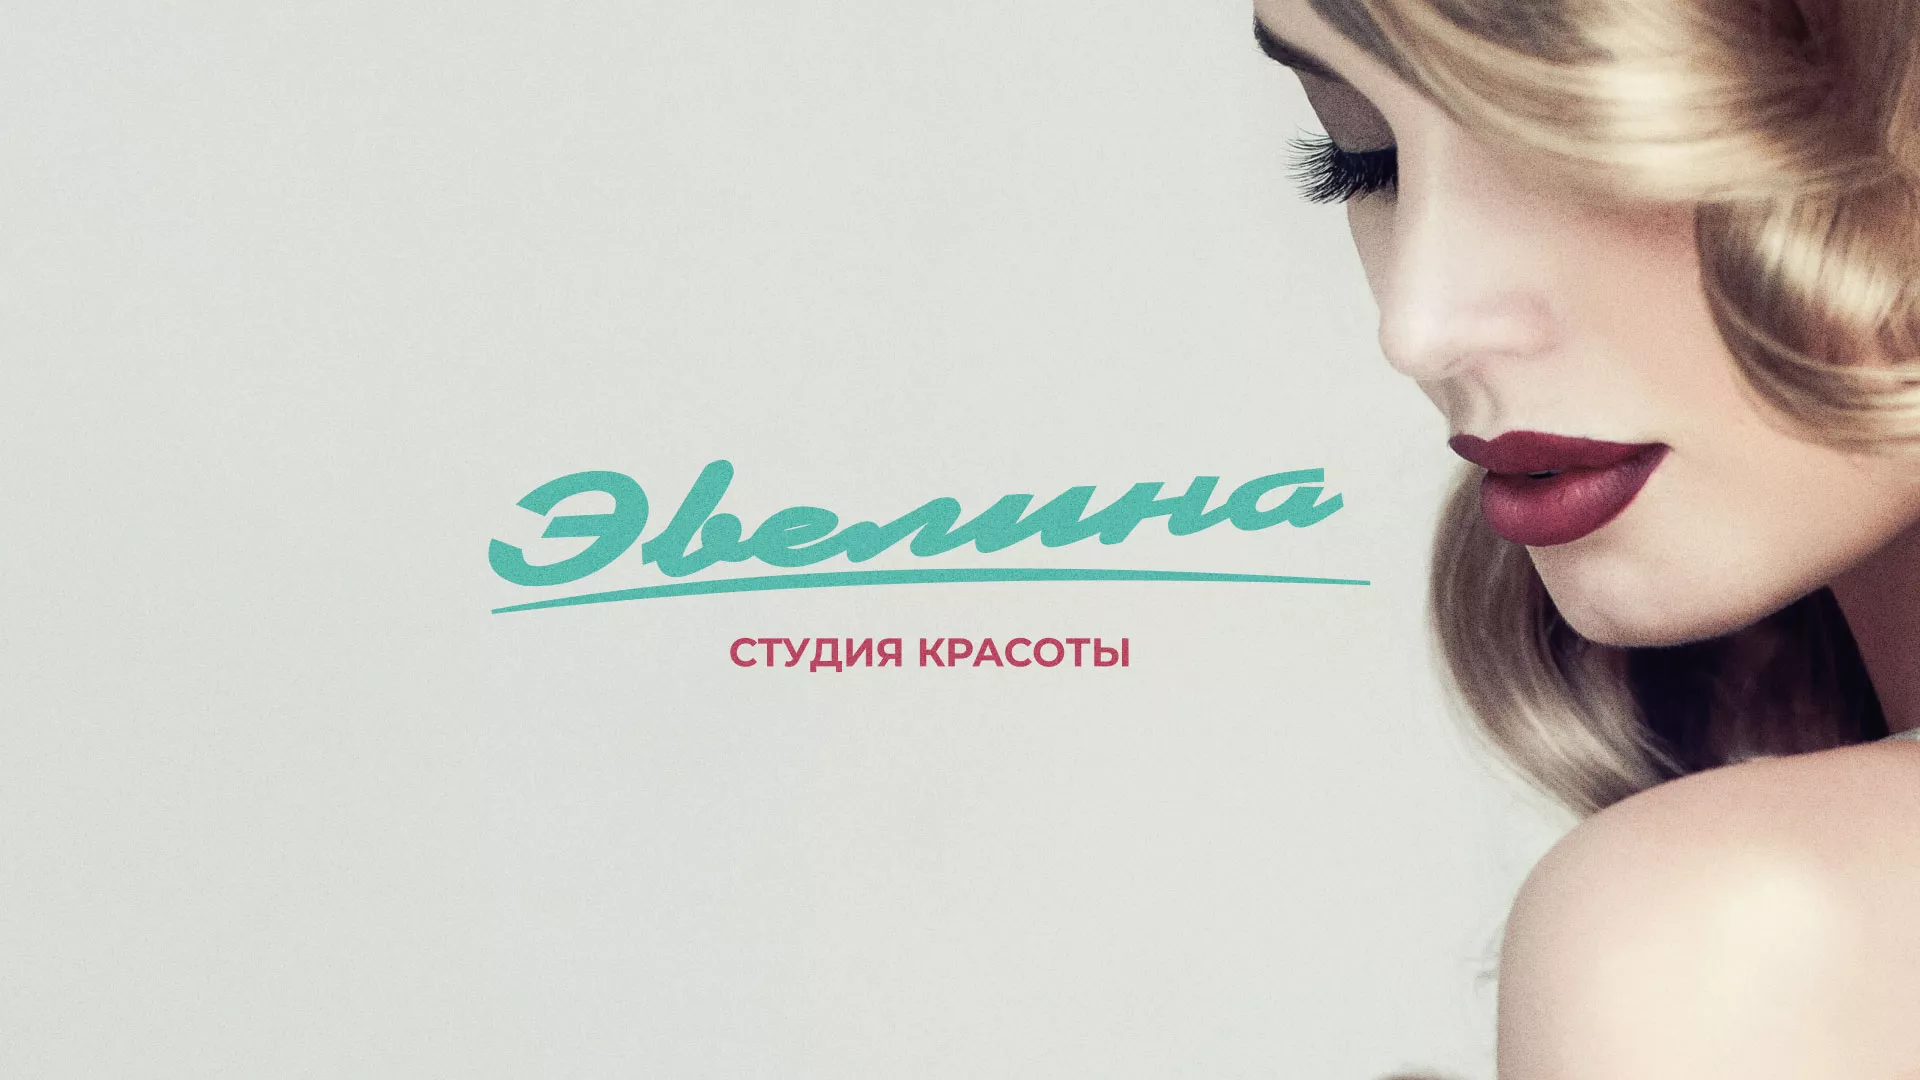 Разработка сайта для салона красоты «Эвелина» в Астрахани